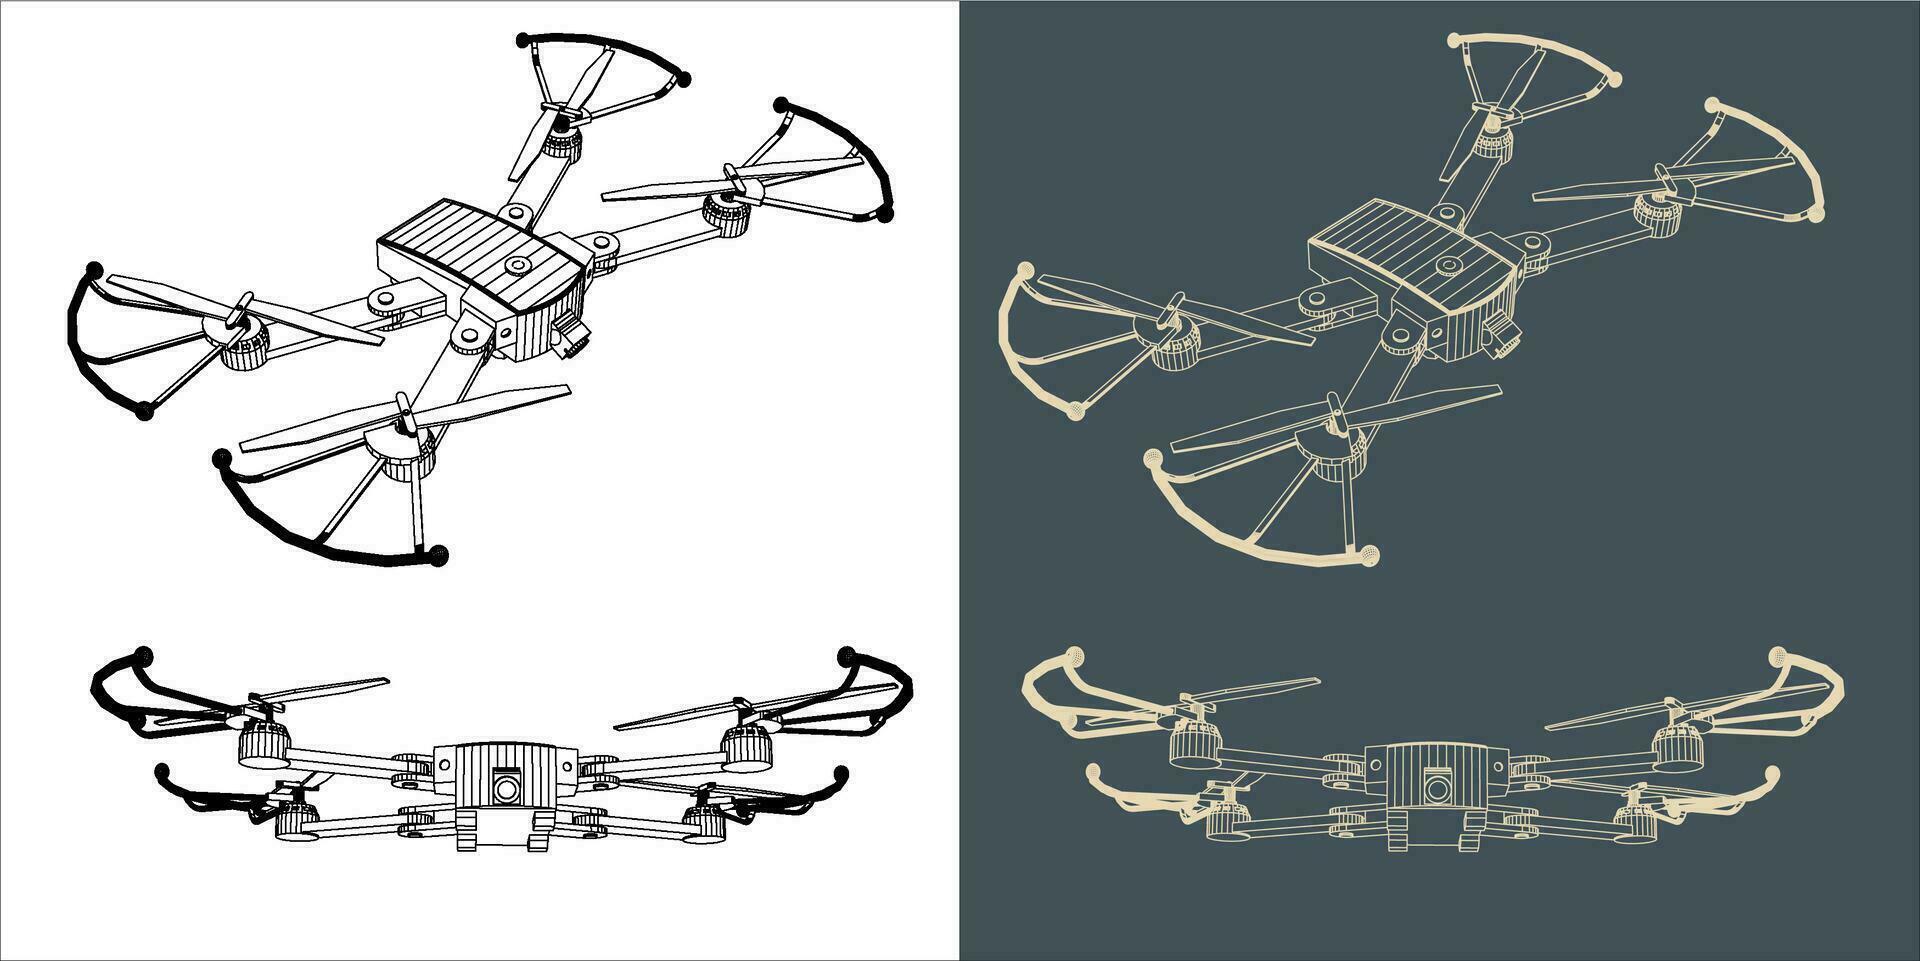 vector dar of quadcopter lijn wireframe blauwdruk